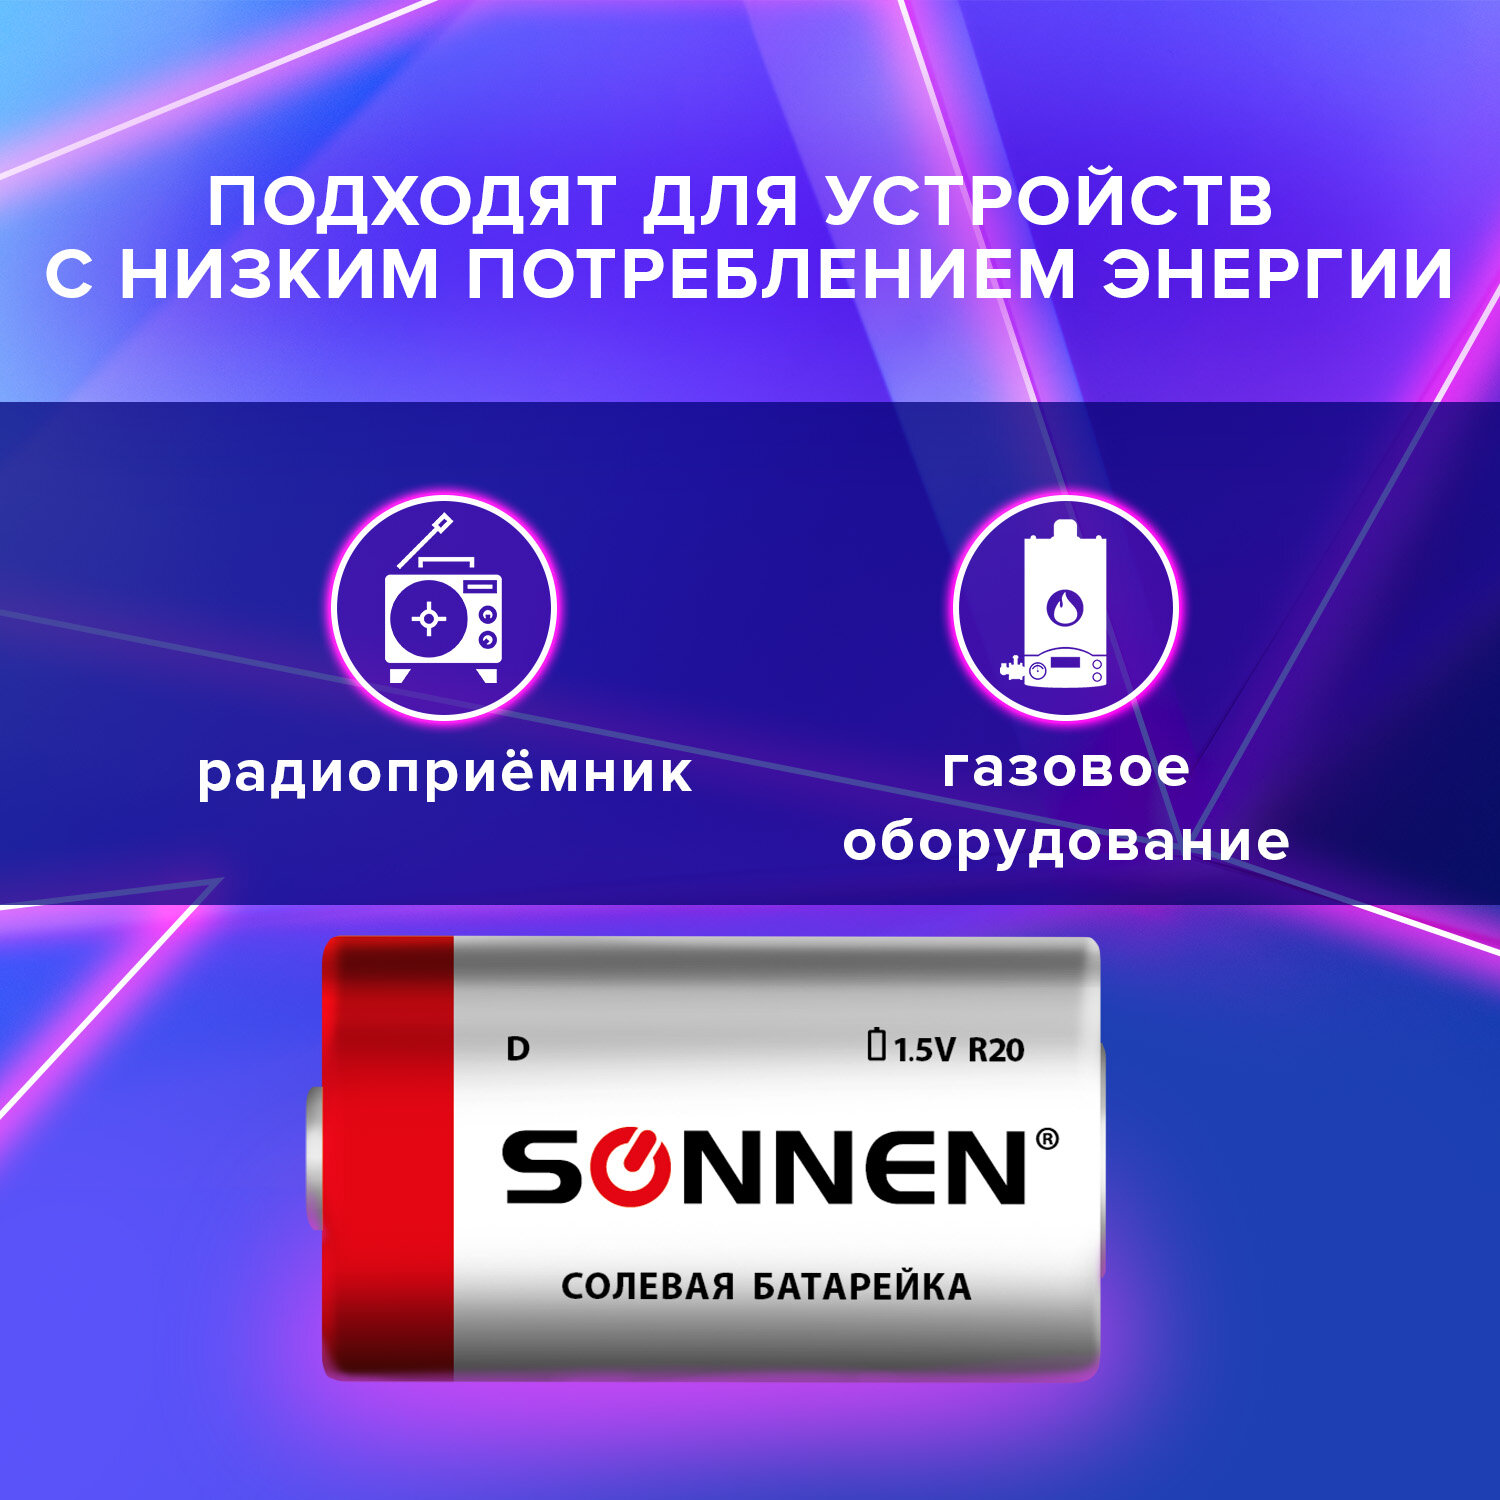 Батарейки Sonnen элементы питания солевые тип D 2 штуки для часов радио игрушек весов - фото 2